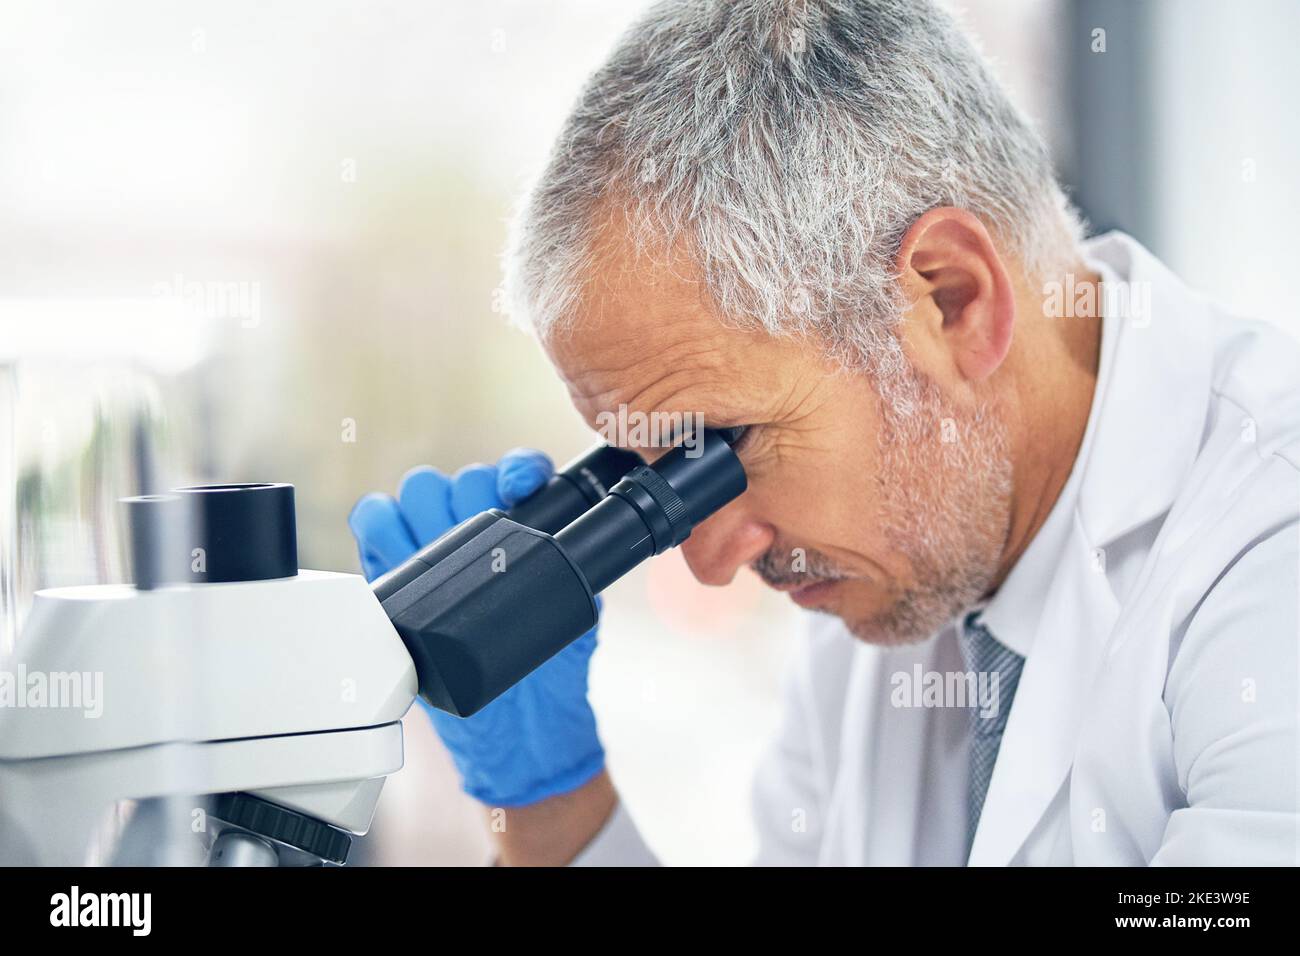 Neue Entdeckungen machen. Ein wissenschaftlicher Forscher bei der Arbeit am Mikroskop in einem Labor. Stockfoto